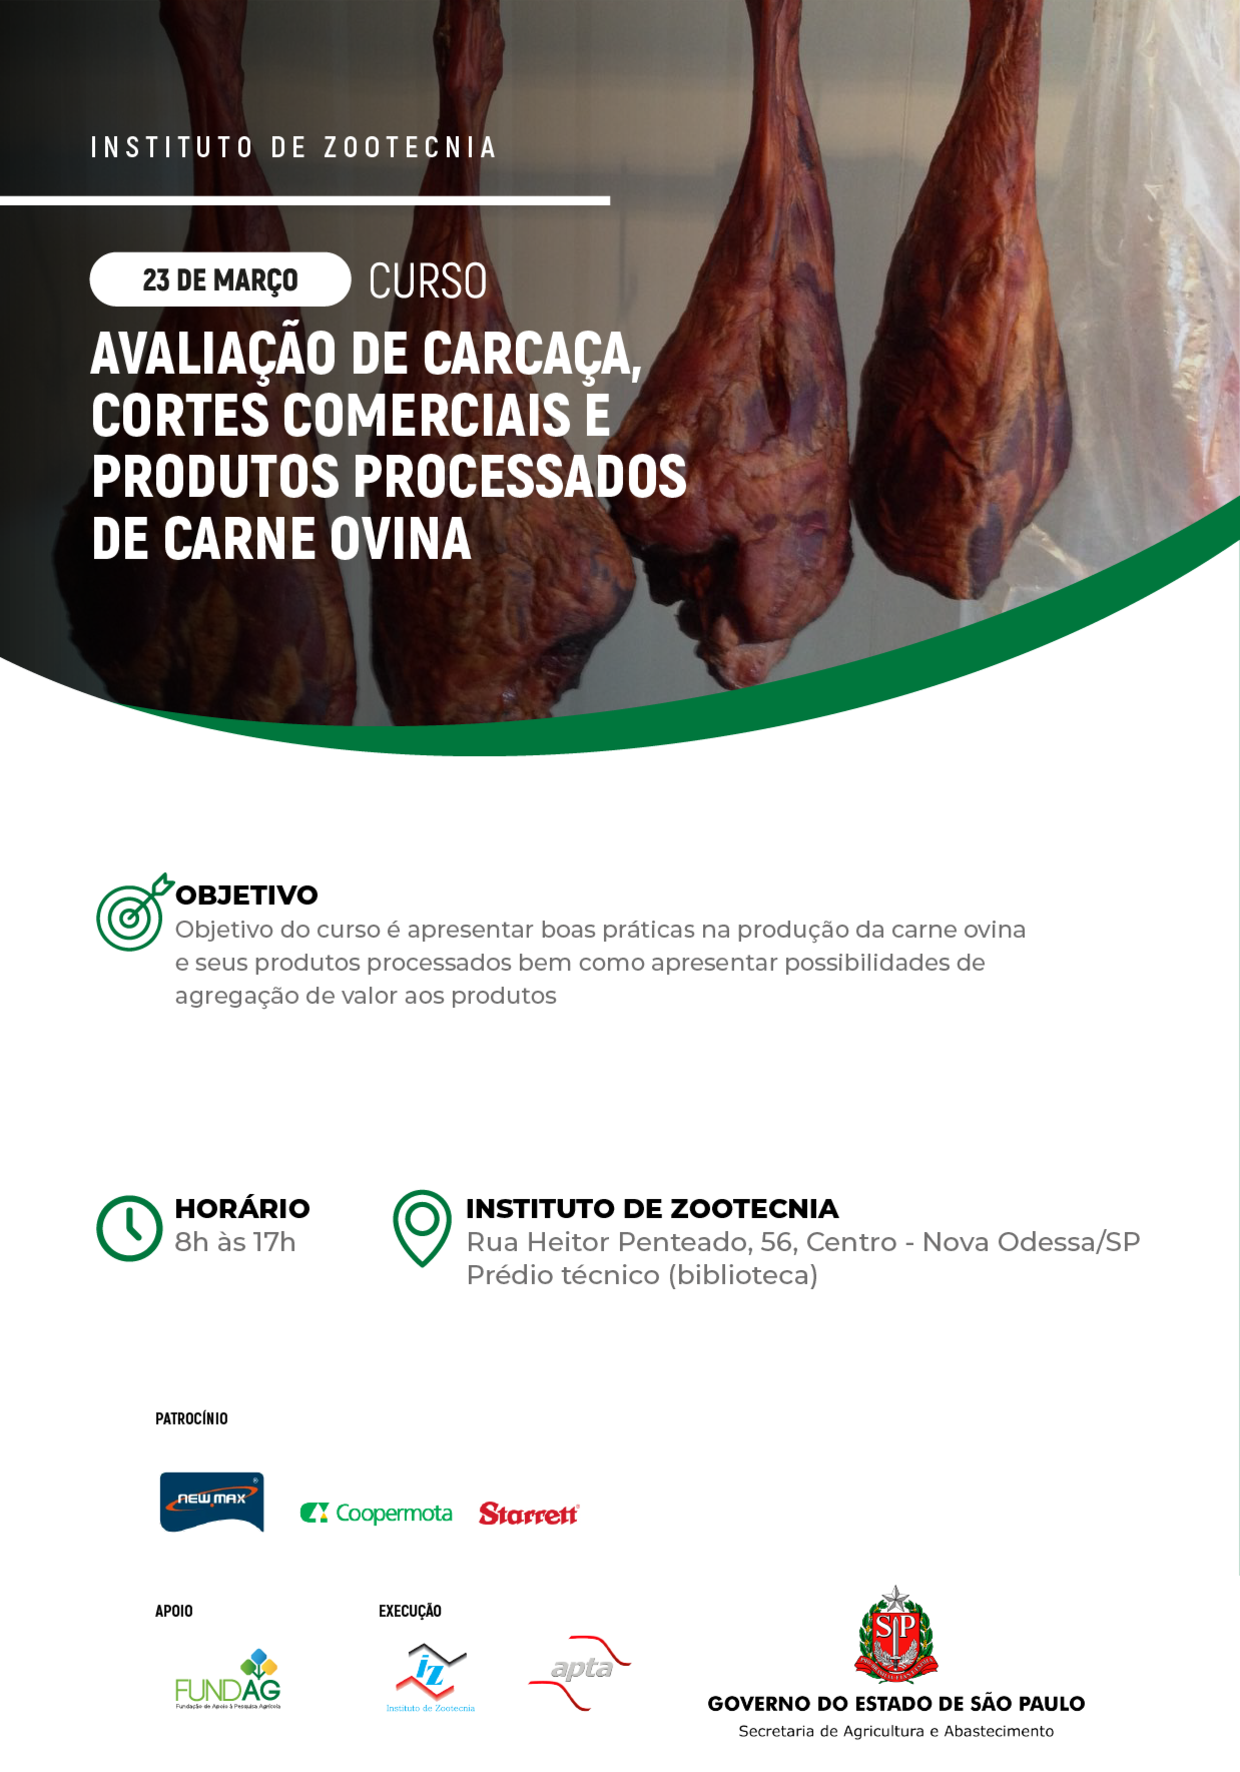 Curso de Avaliação de Carcaça, Cortes Comerciais e Produtos Processados de Carne Ovina